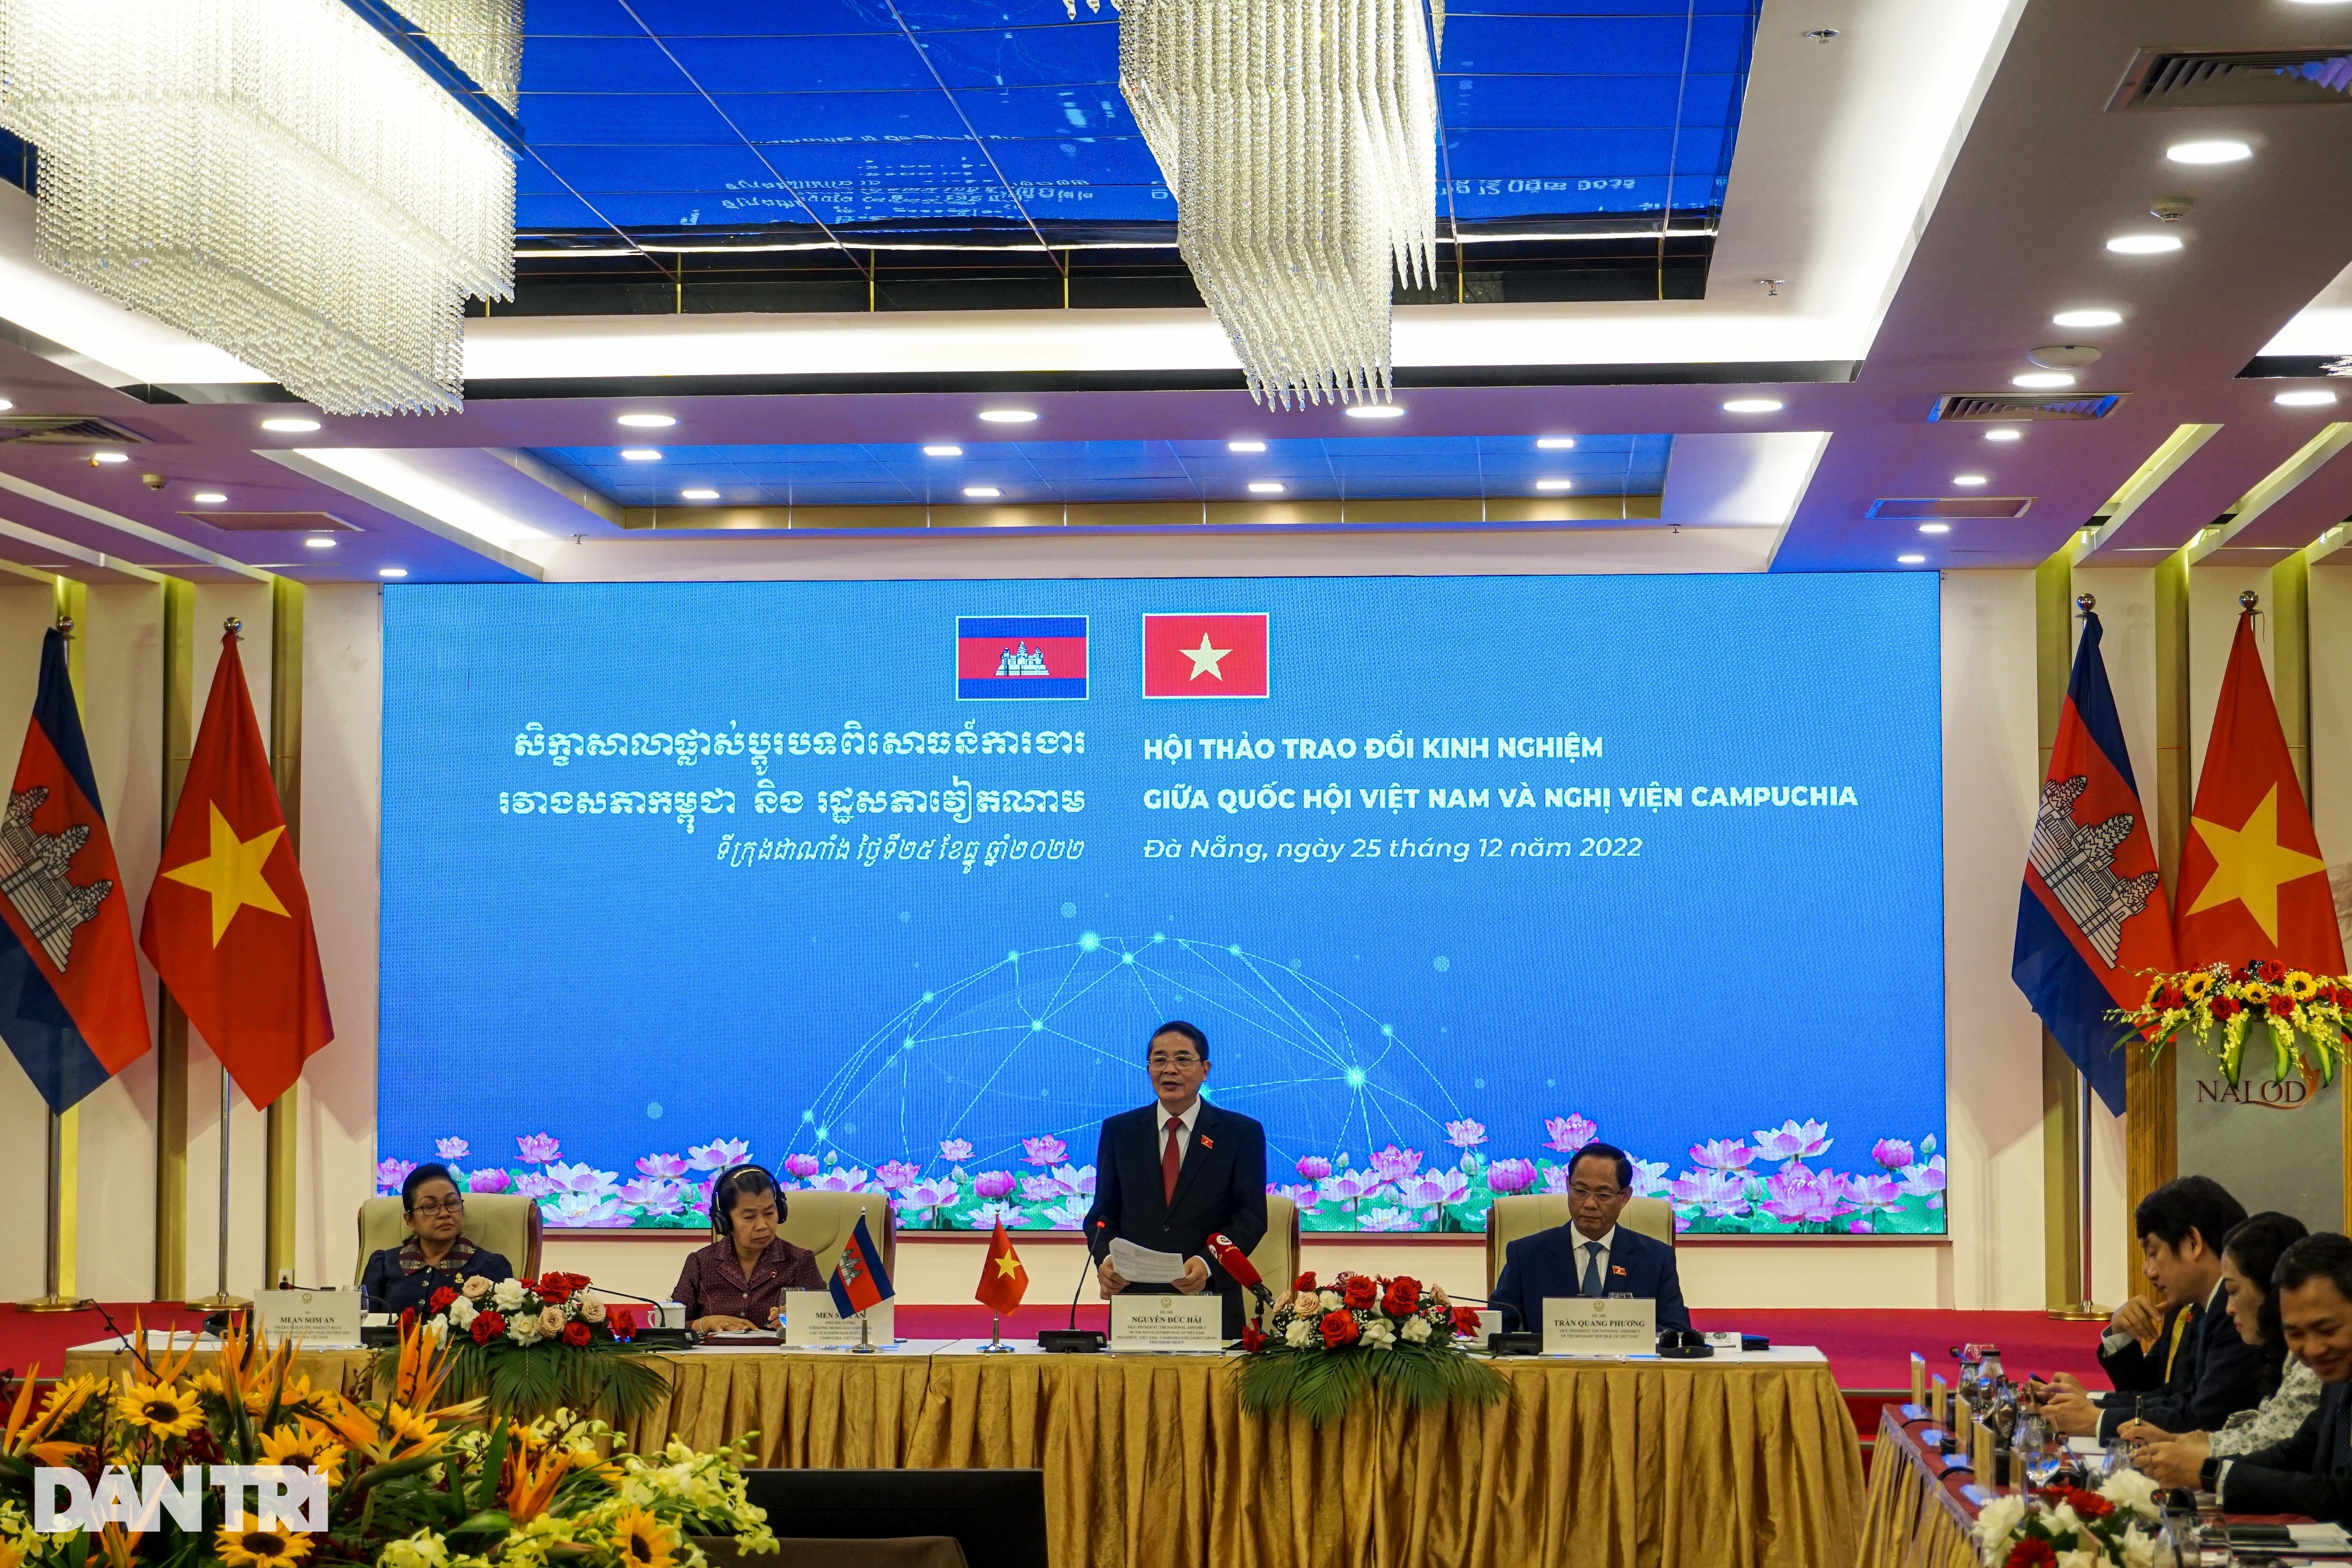 Thúc đẩy hợp tác giữa Quốc hội Việt Nam và Nghị viện Campuchia - 2